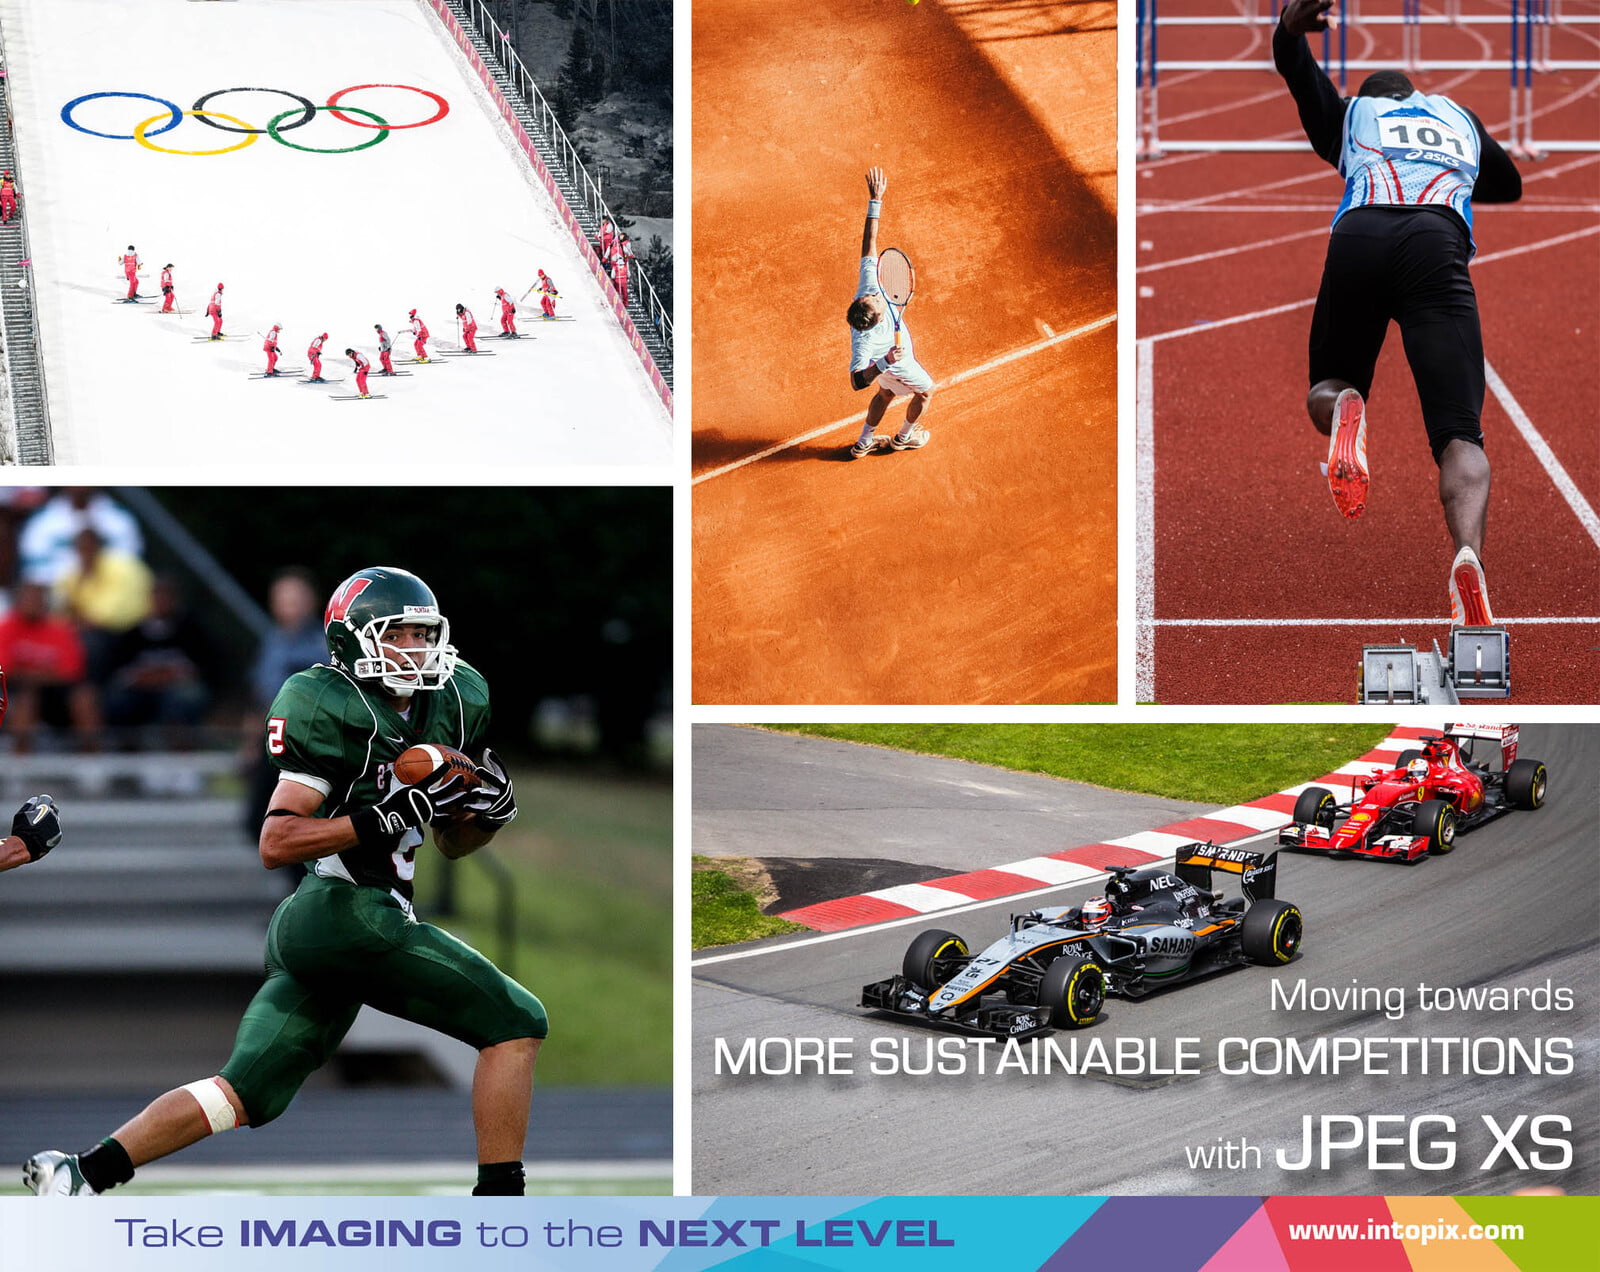 Des compétitions sportives plus durables grâce à la production à distance avec JPEG XS